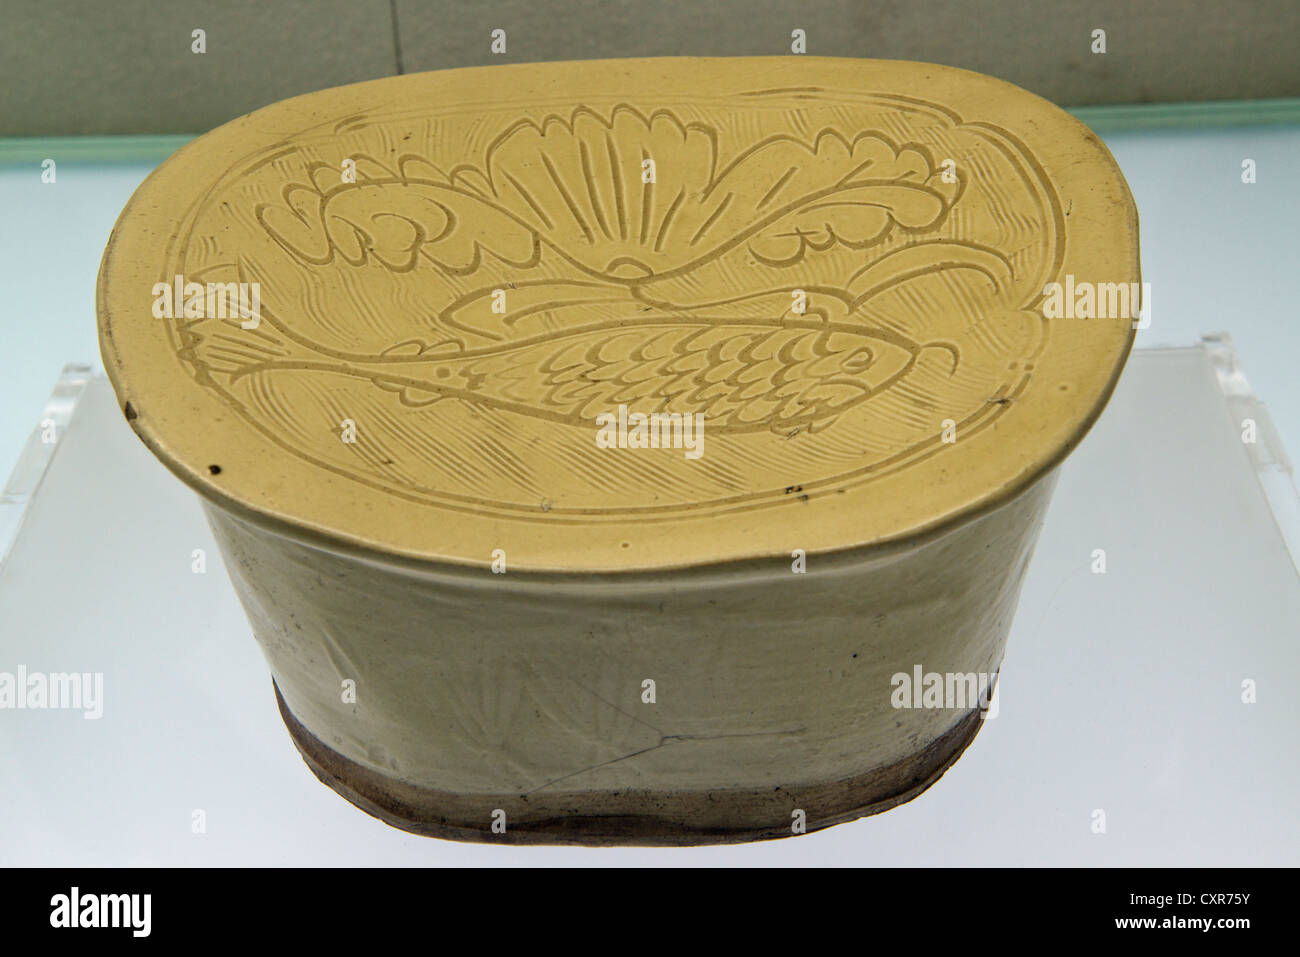 Porcelana blanca almohada con pescado y flores talladas, patrón de la Dinastía Jin (1115-1234). Museo de Shanxi. China. Foto de stock